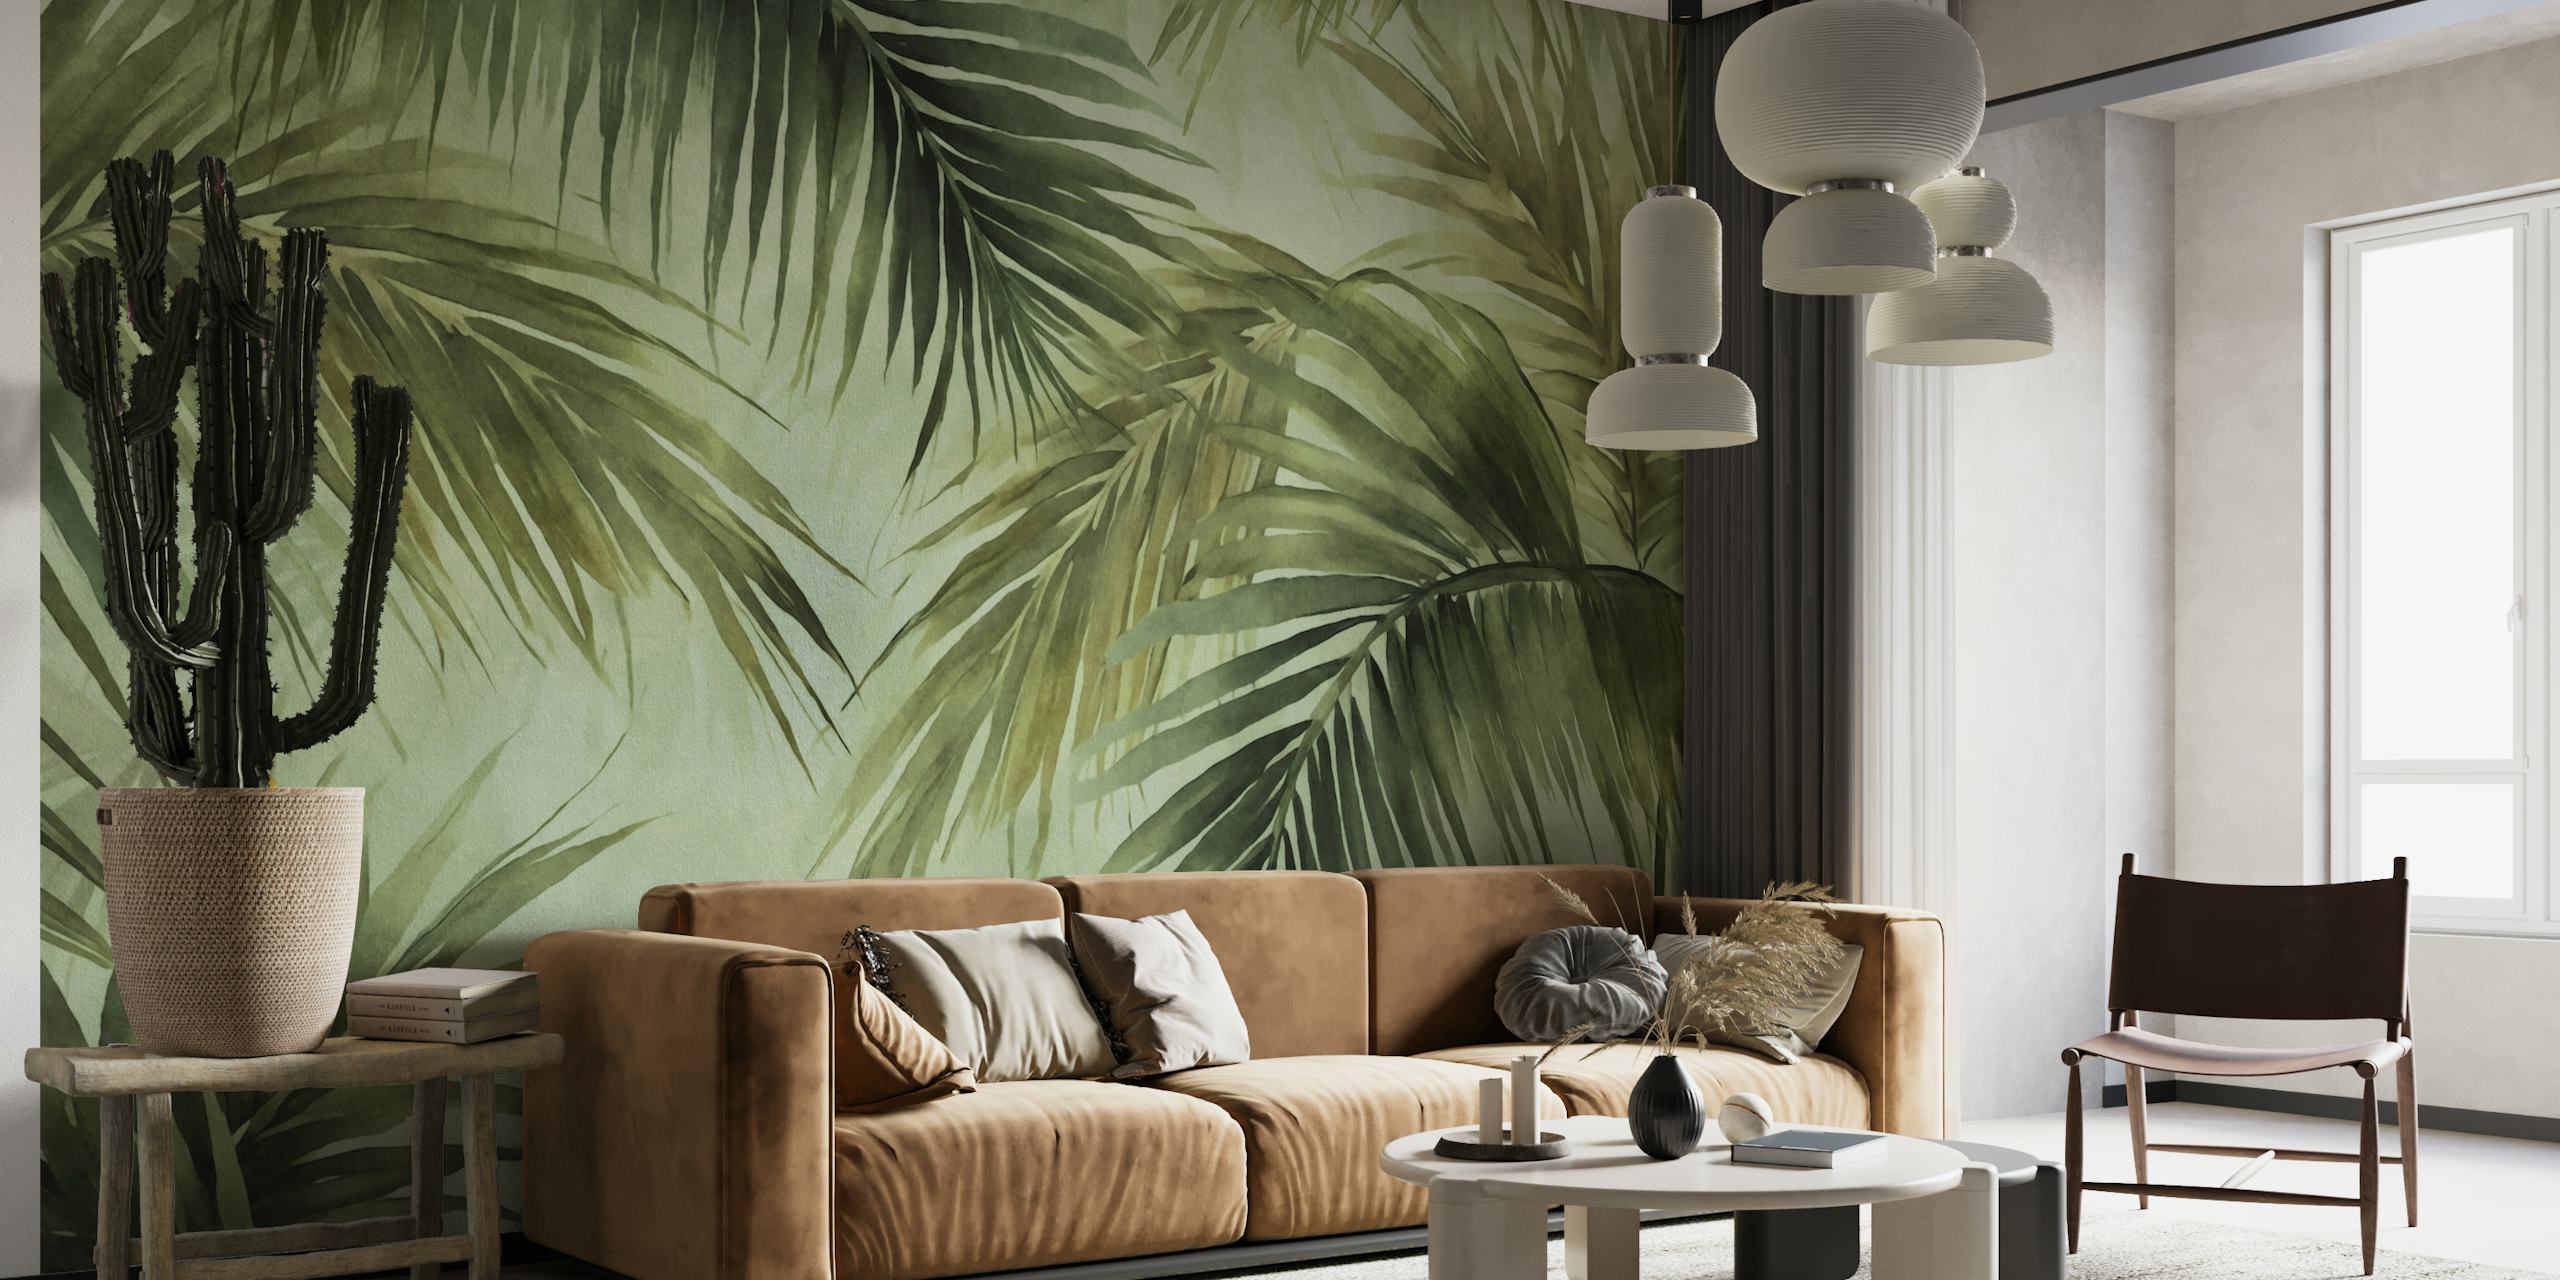 Akvarel mural s palminim lišćem u ćudljivim nijansama, savršen za stvaranje ugođaja tropskog otoka.